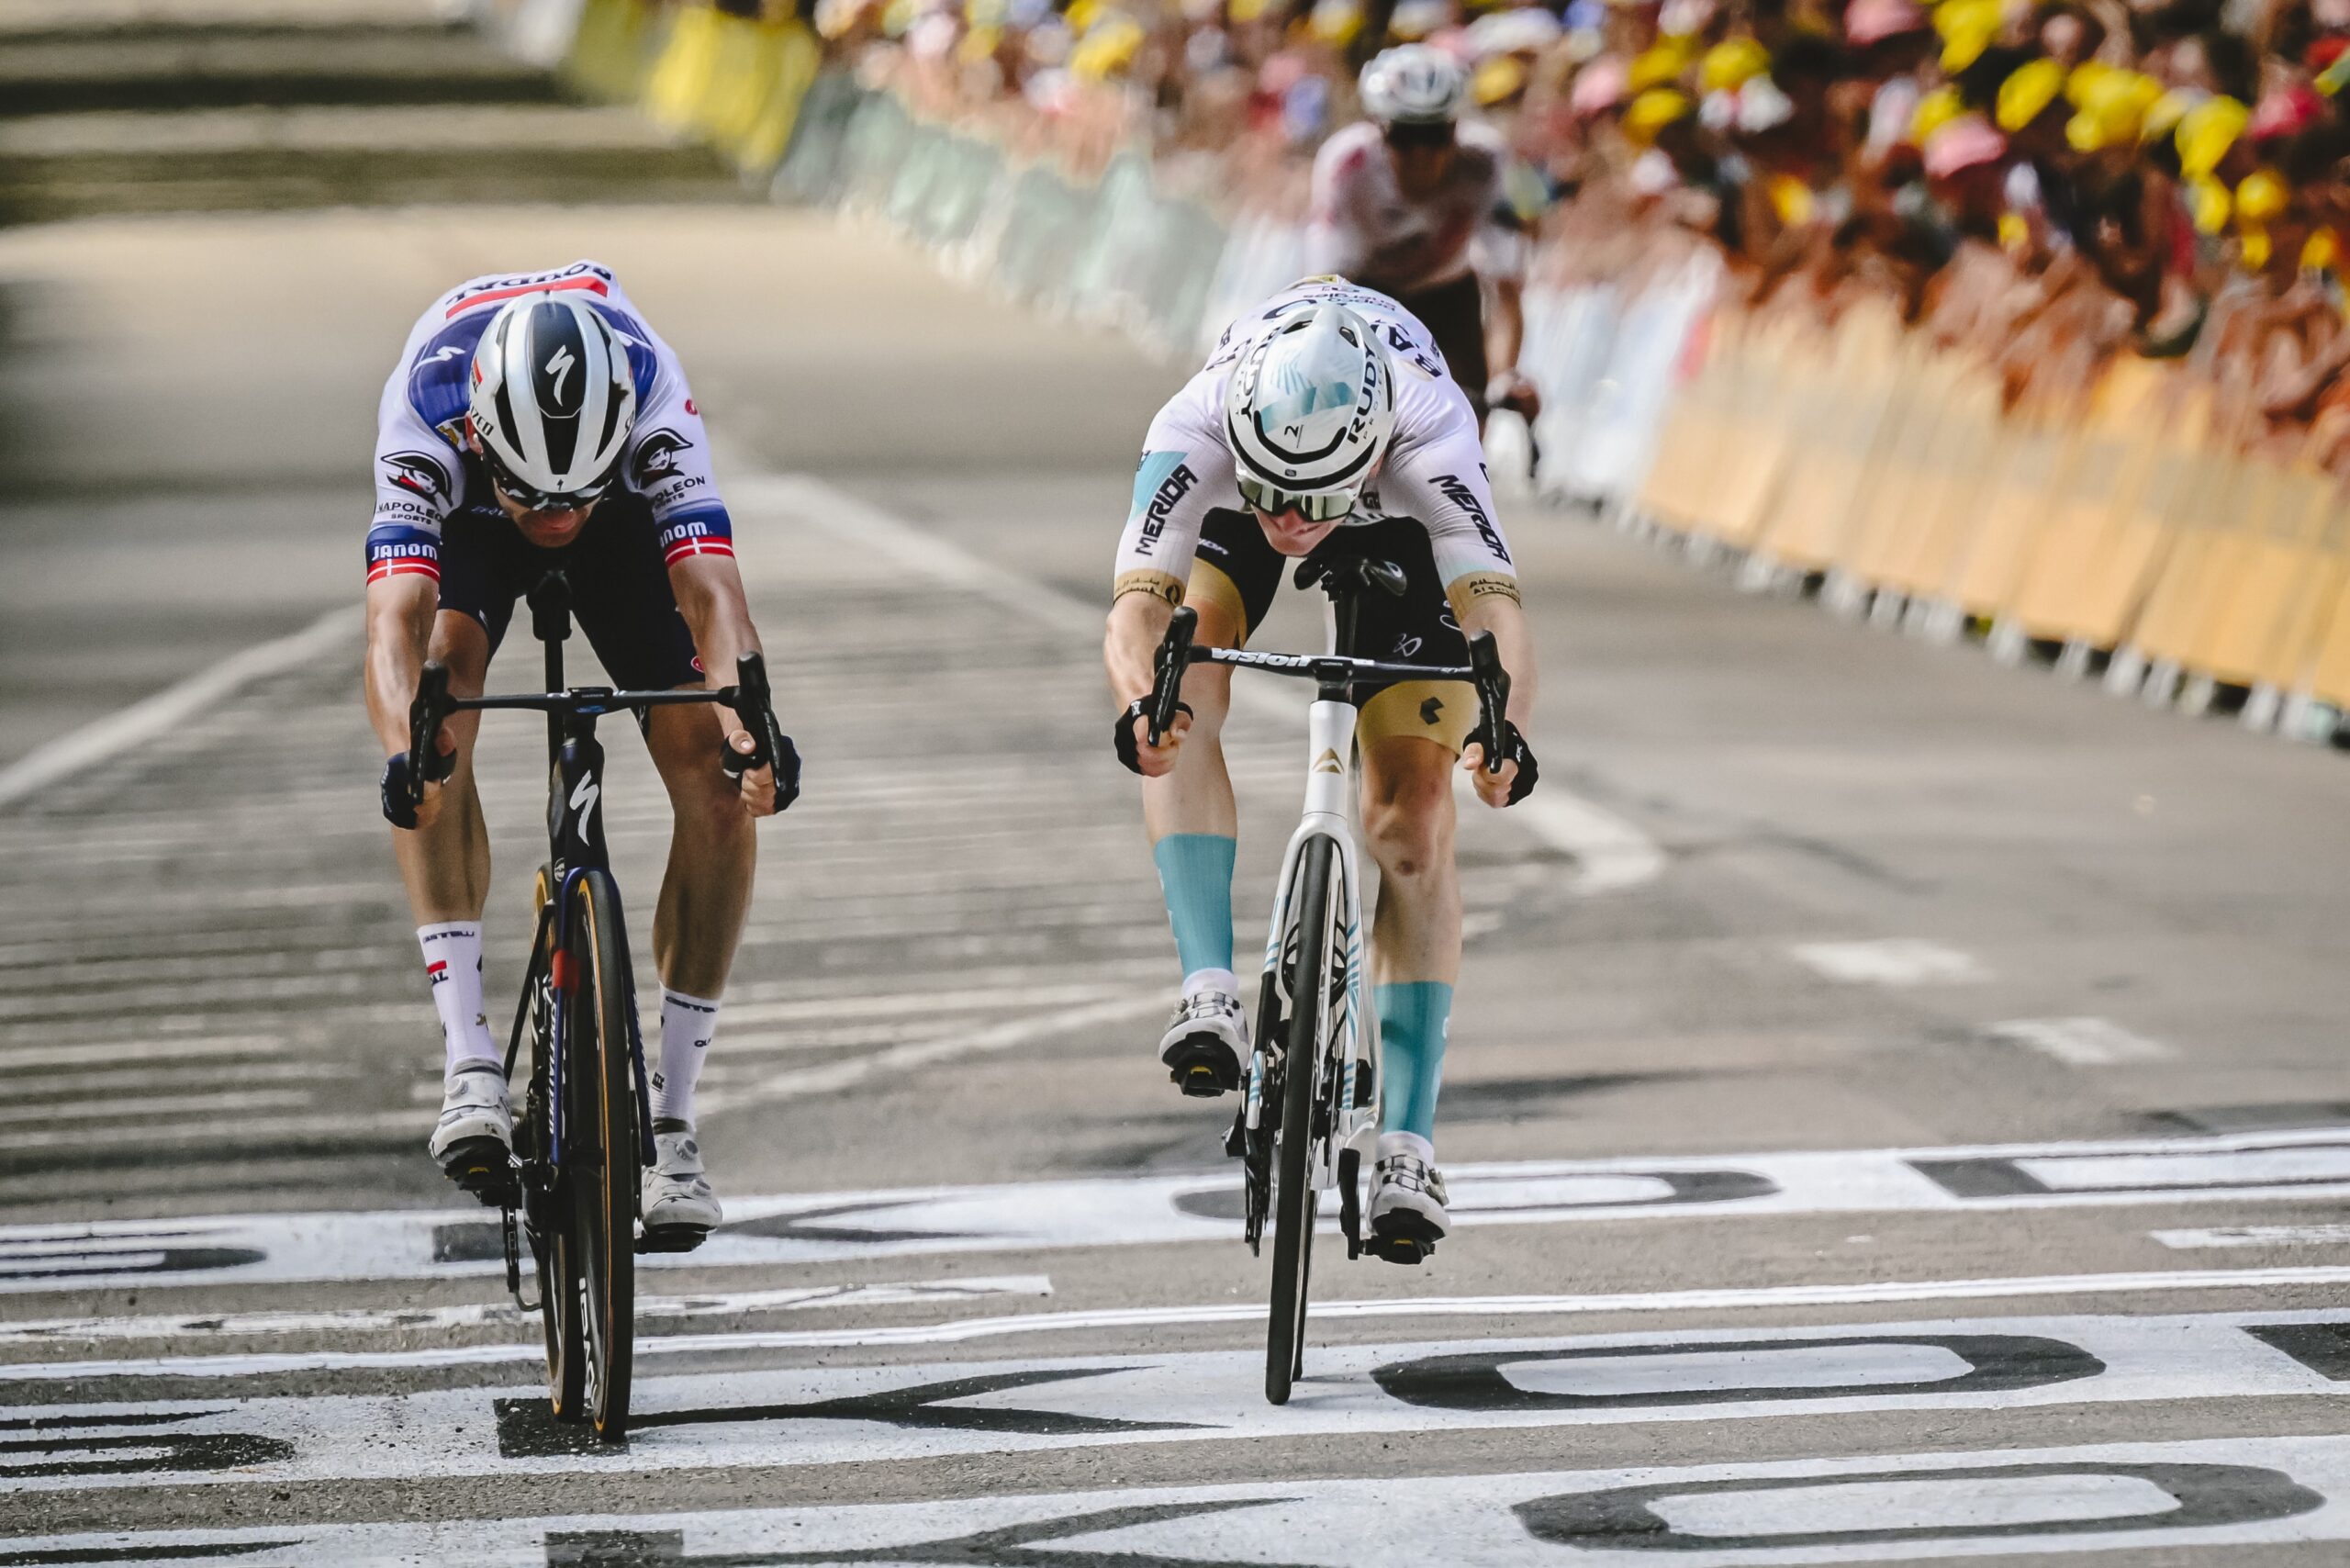 Fonte immagine: Twitter ufficiale Tour de France